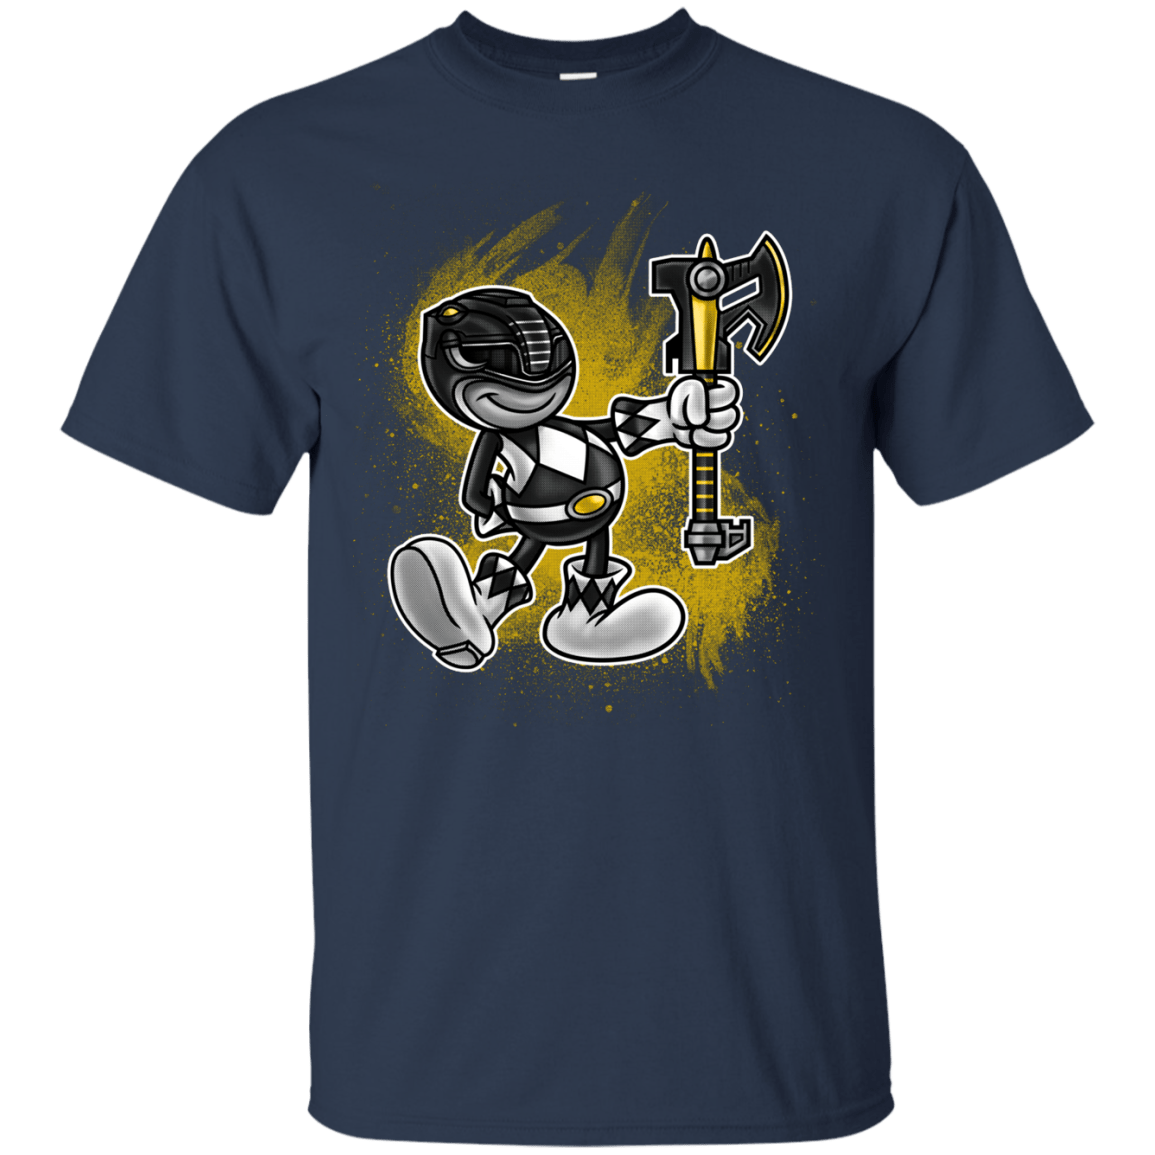 Black Ranger Artwork T-Shirt